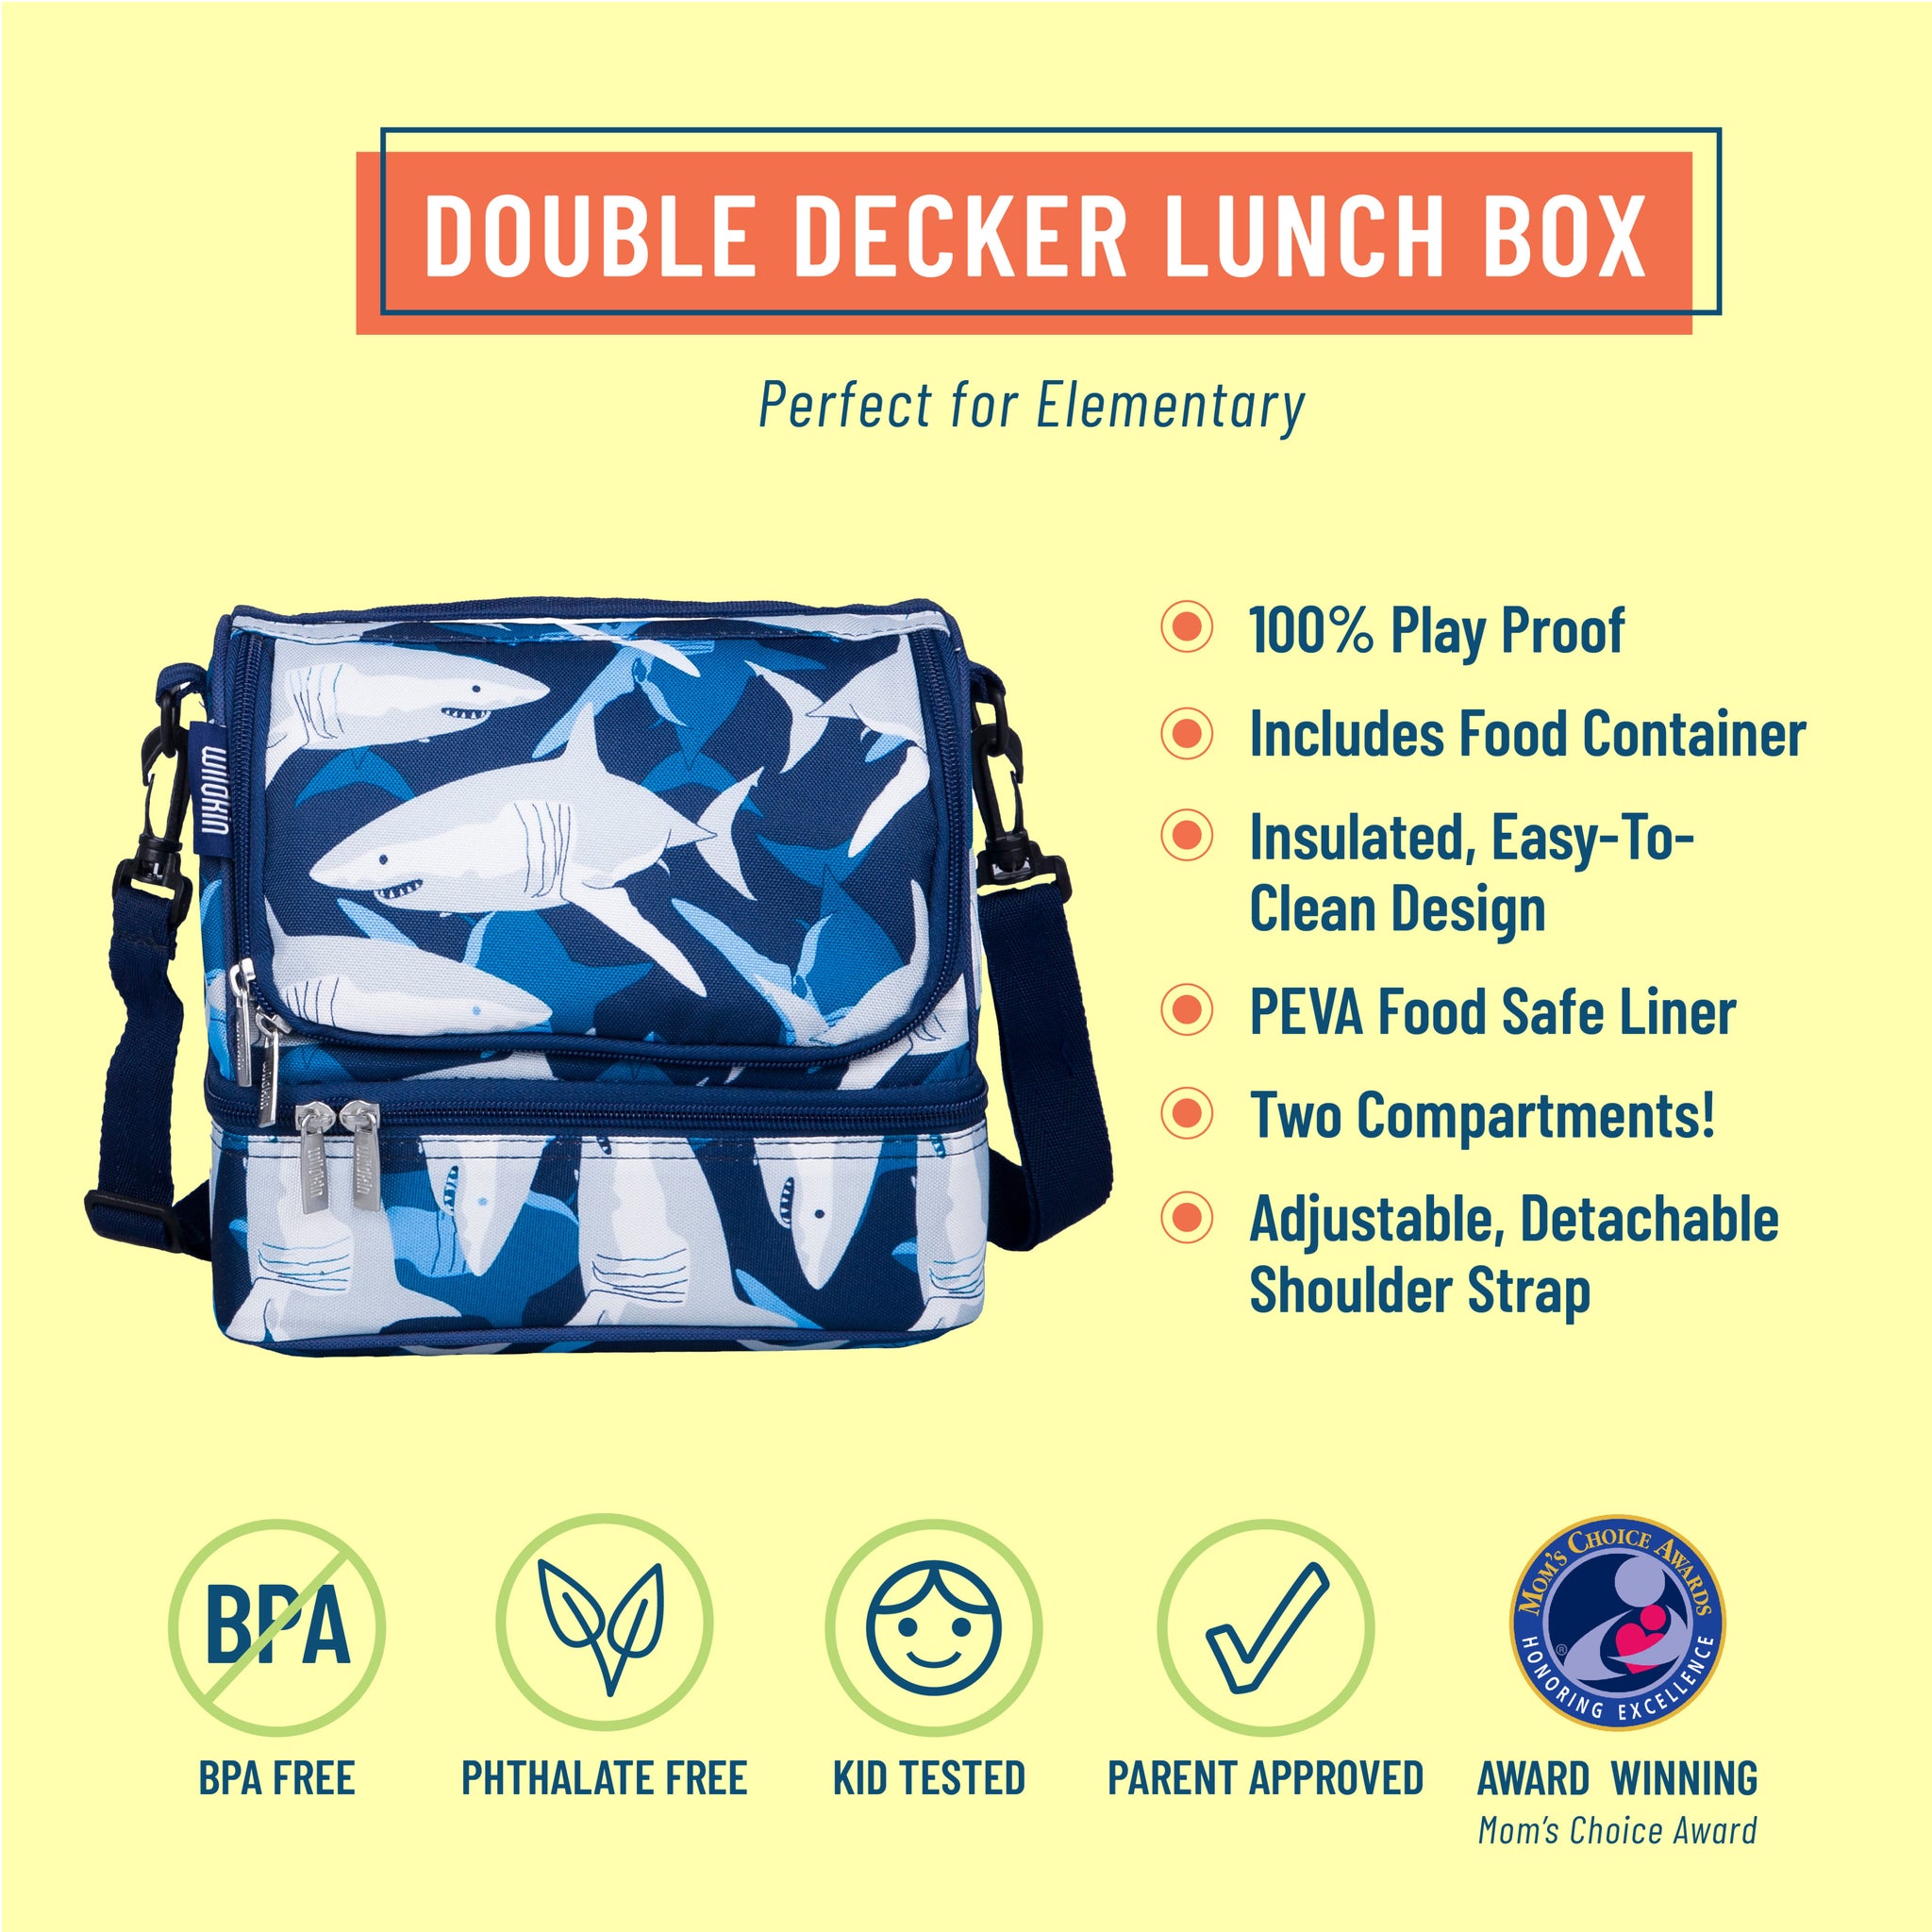 Shark Zipper Lunch Bag – The Little Apple